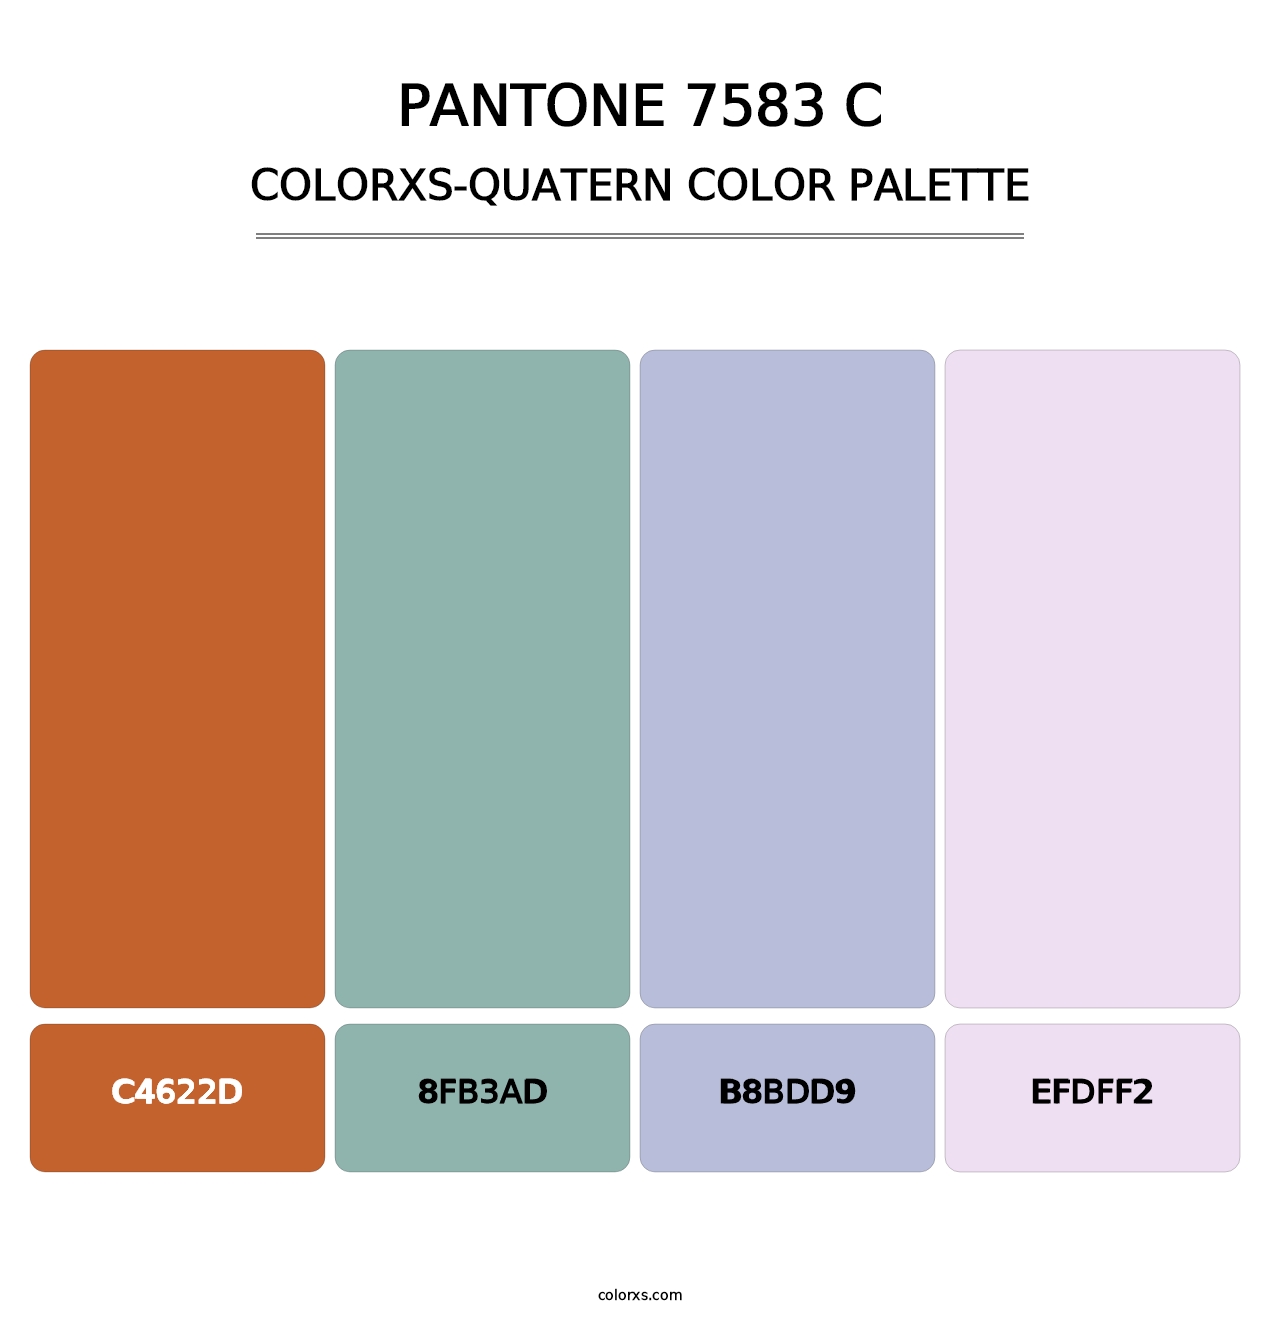 PANTONE 7583 C - Colorxs Quatern Palette